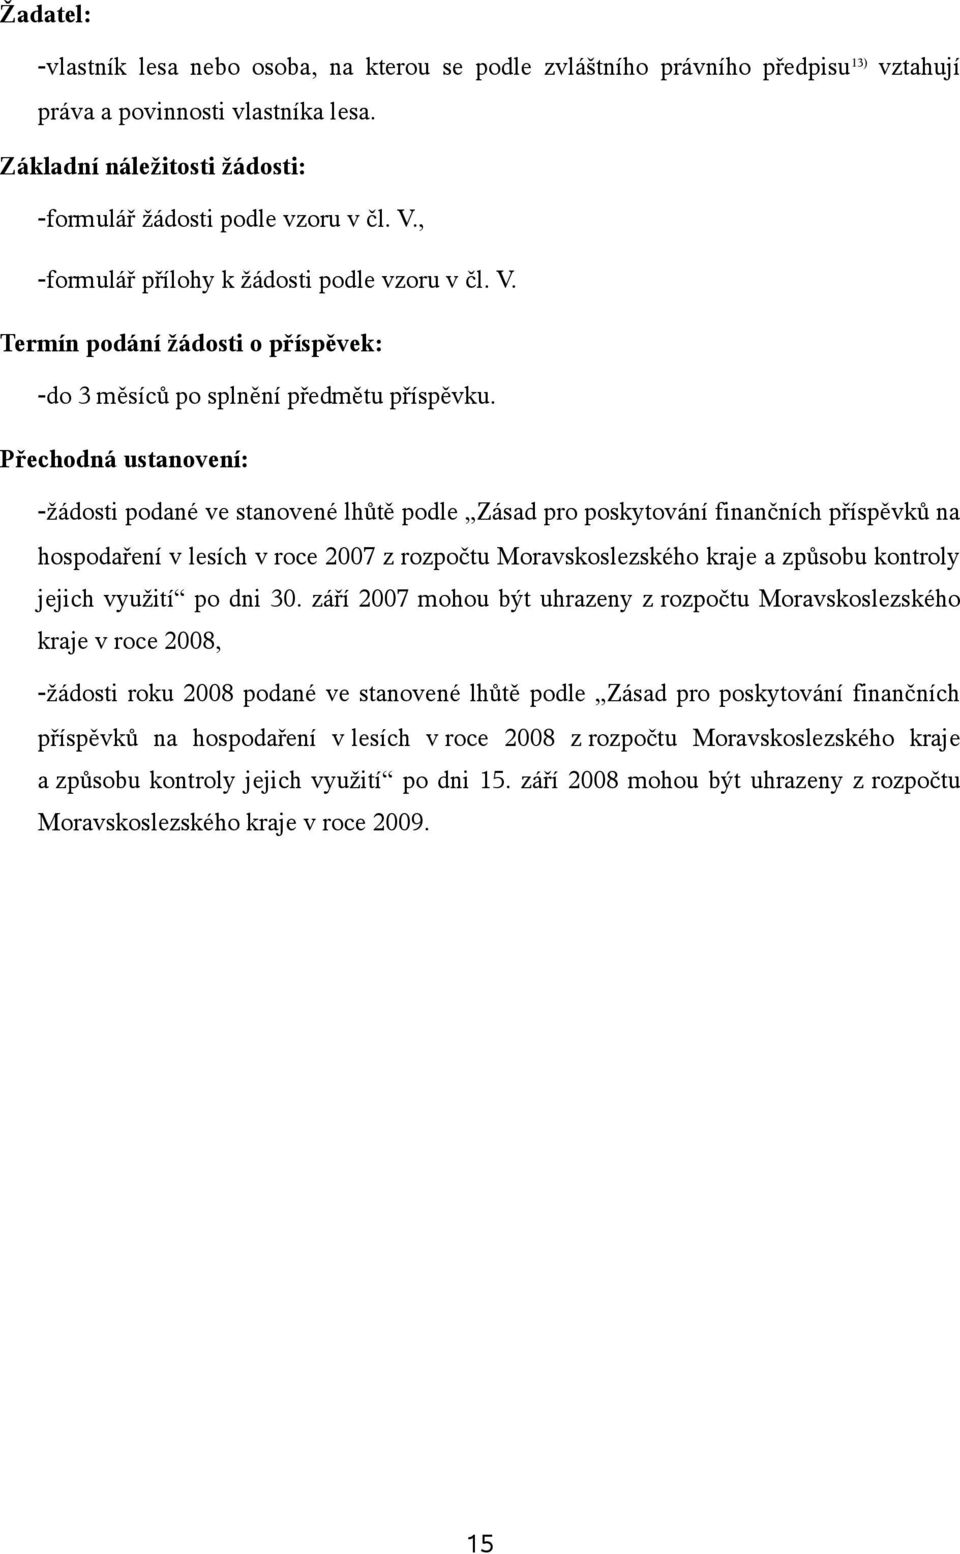 Přechodná ustanovení: -žádosti podané ve stanovené lhůtě podle Zásad pro poskytování finančních příspěvků na hospodaření v lesích v roce 2007 z rozpočtu Moravskoslezského kraje a způsobu kontroly